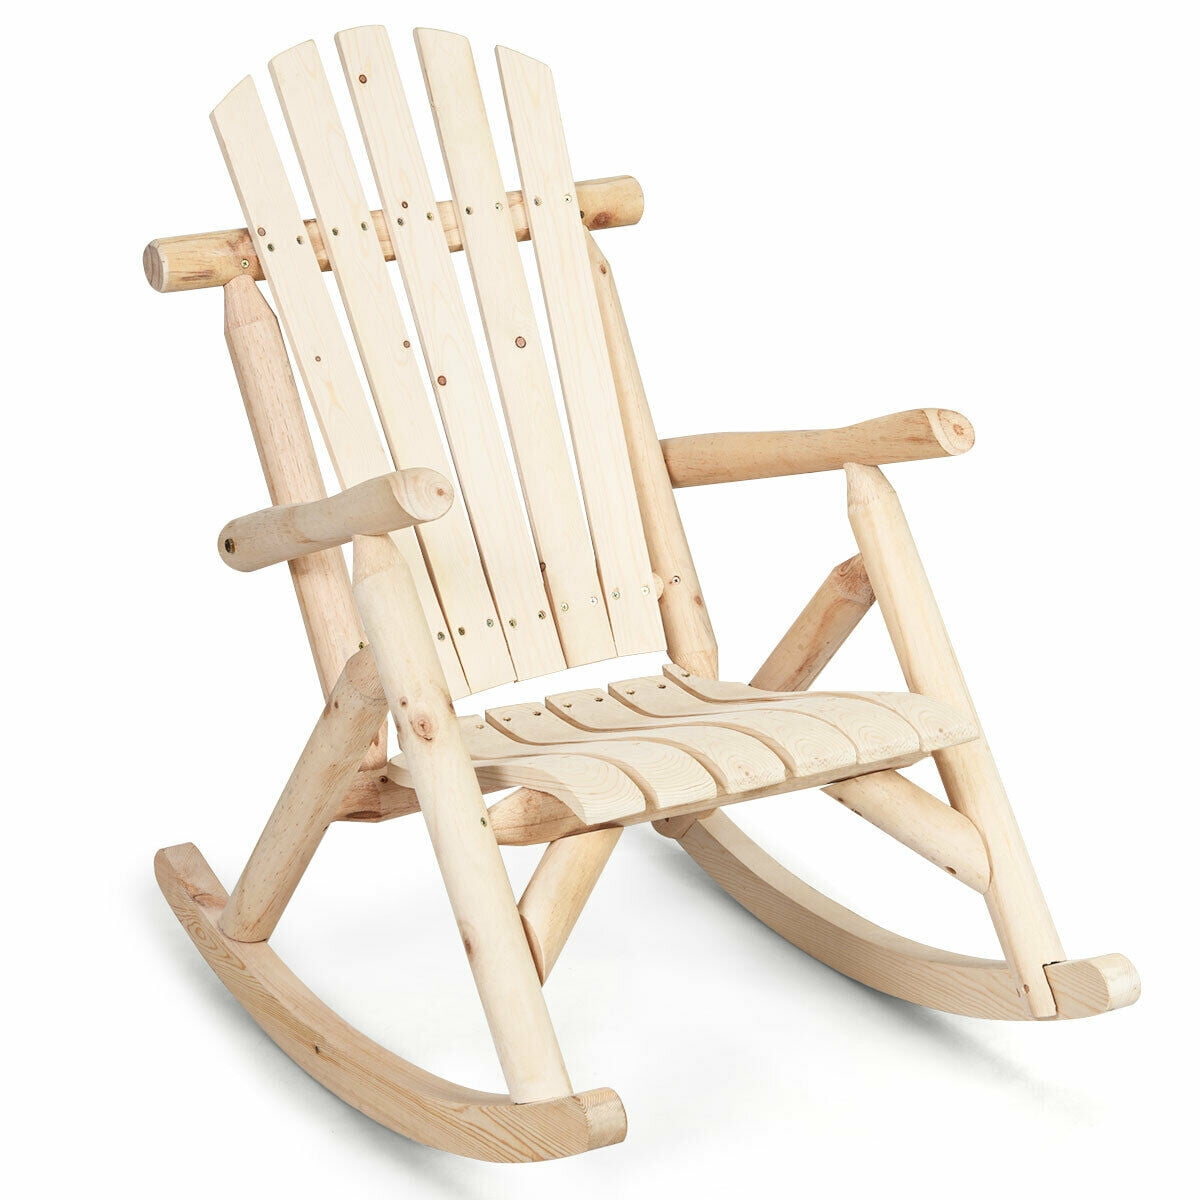 Rustic Wooden Rocking Chair Front Porch Rocker Garden Patio Seat Indoor Outdoor 